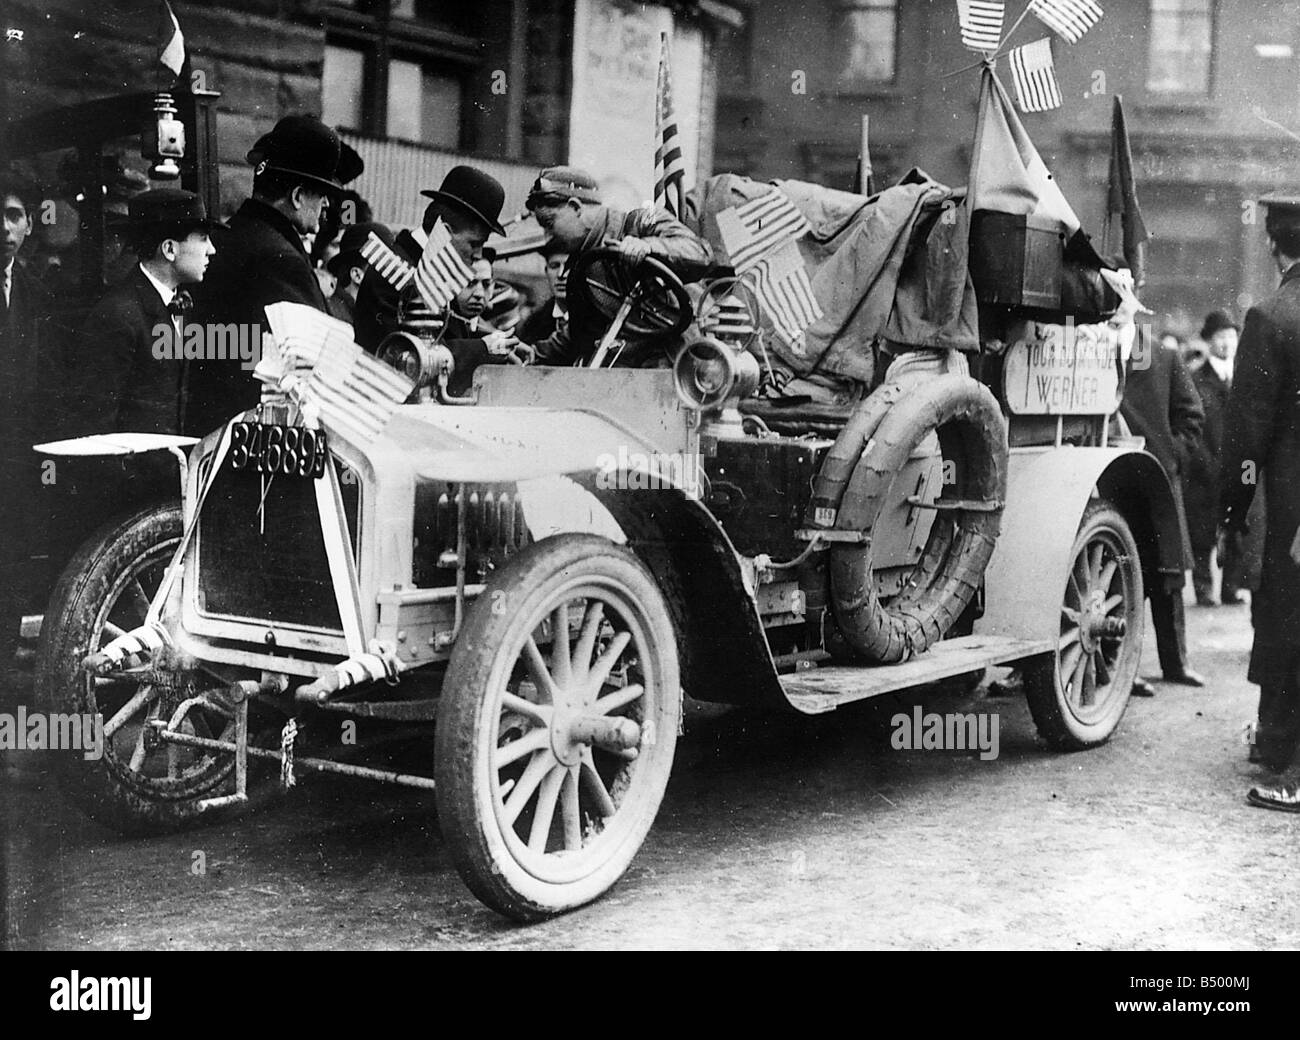 A New York Parigi gara automobilistica concorrente nel 1906 Foto Stock